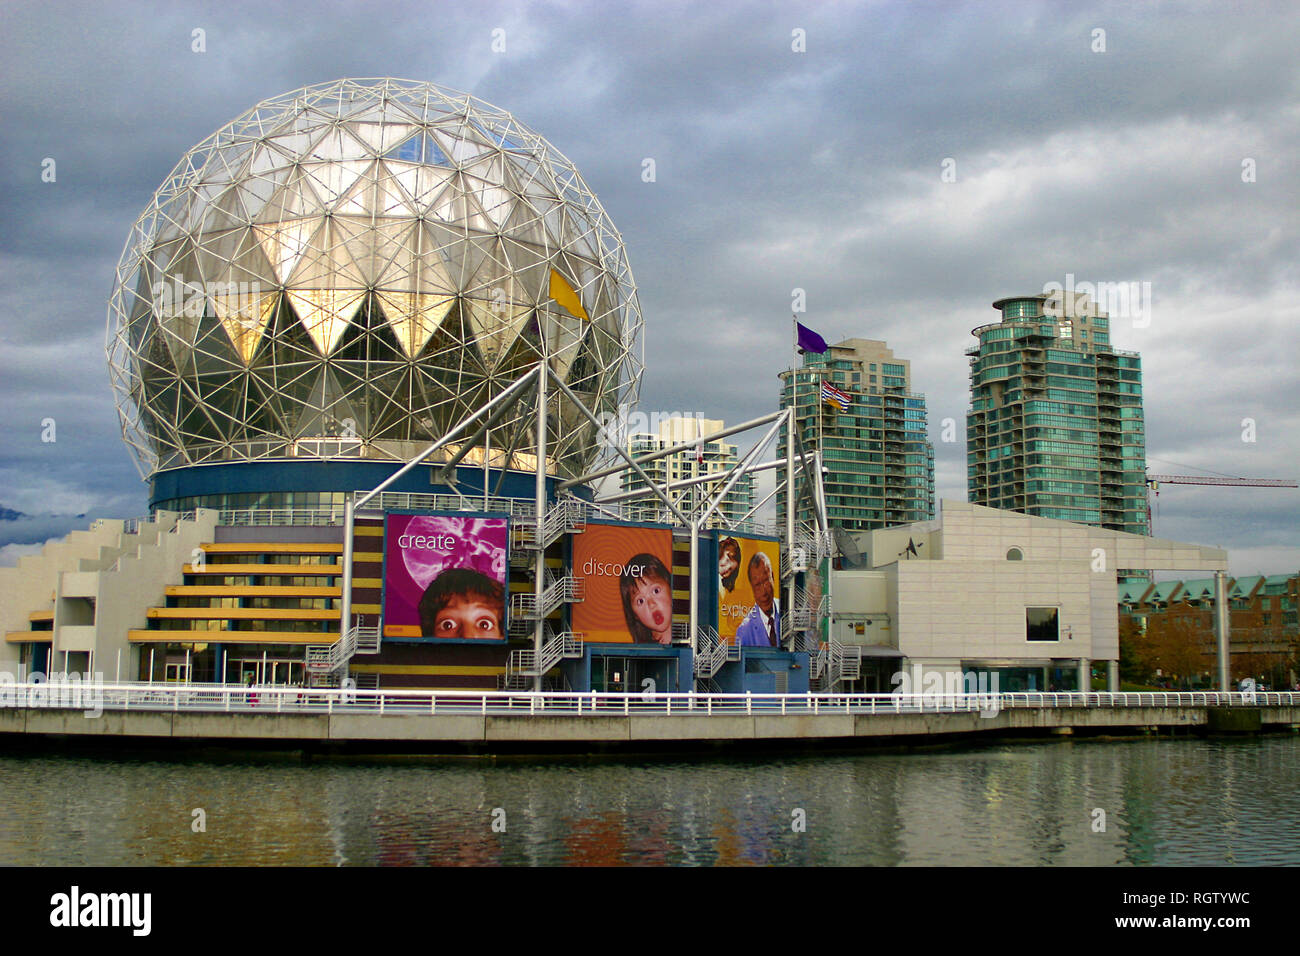 Le Centre des sciences de la ville de Vancouver, en Colombie-Britannique, Canada. Grâce à la science et la nature, nous enflammer l'émerveillement et l'autonomisation des rêves. Banque D'Images